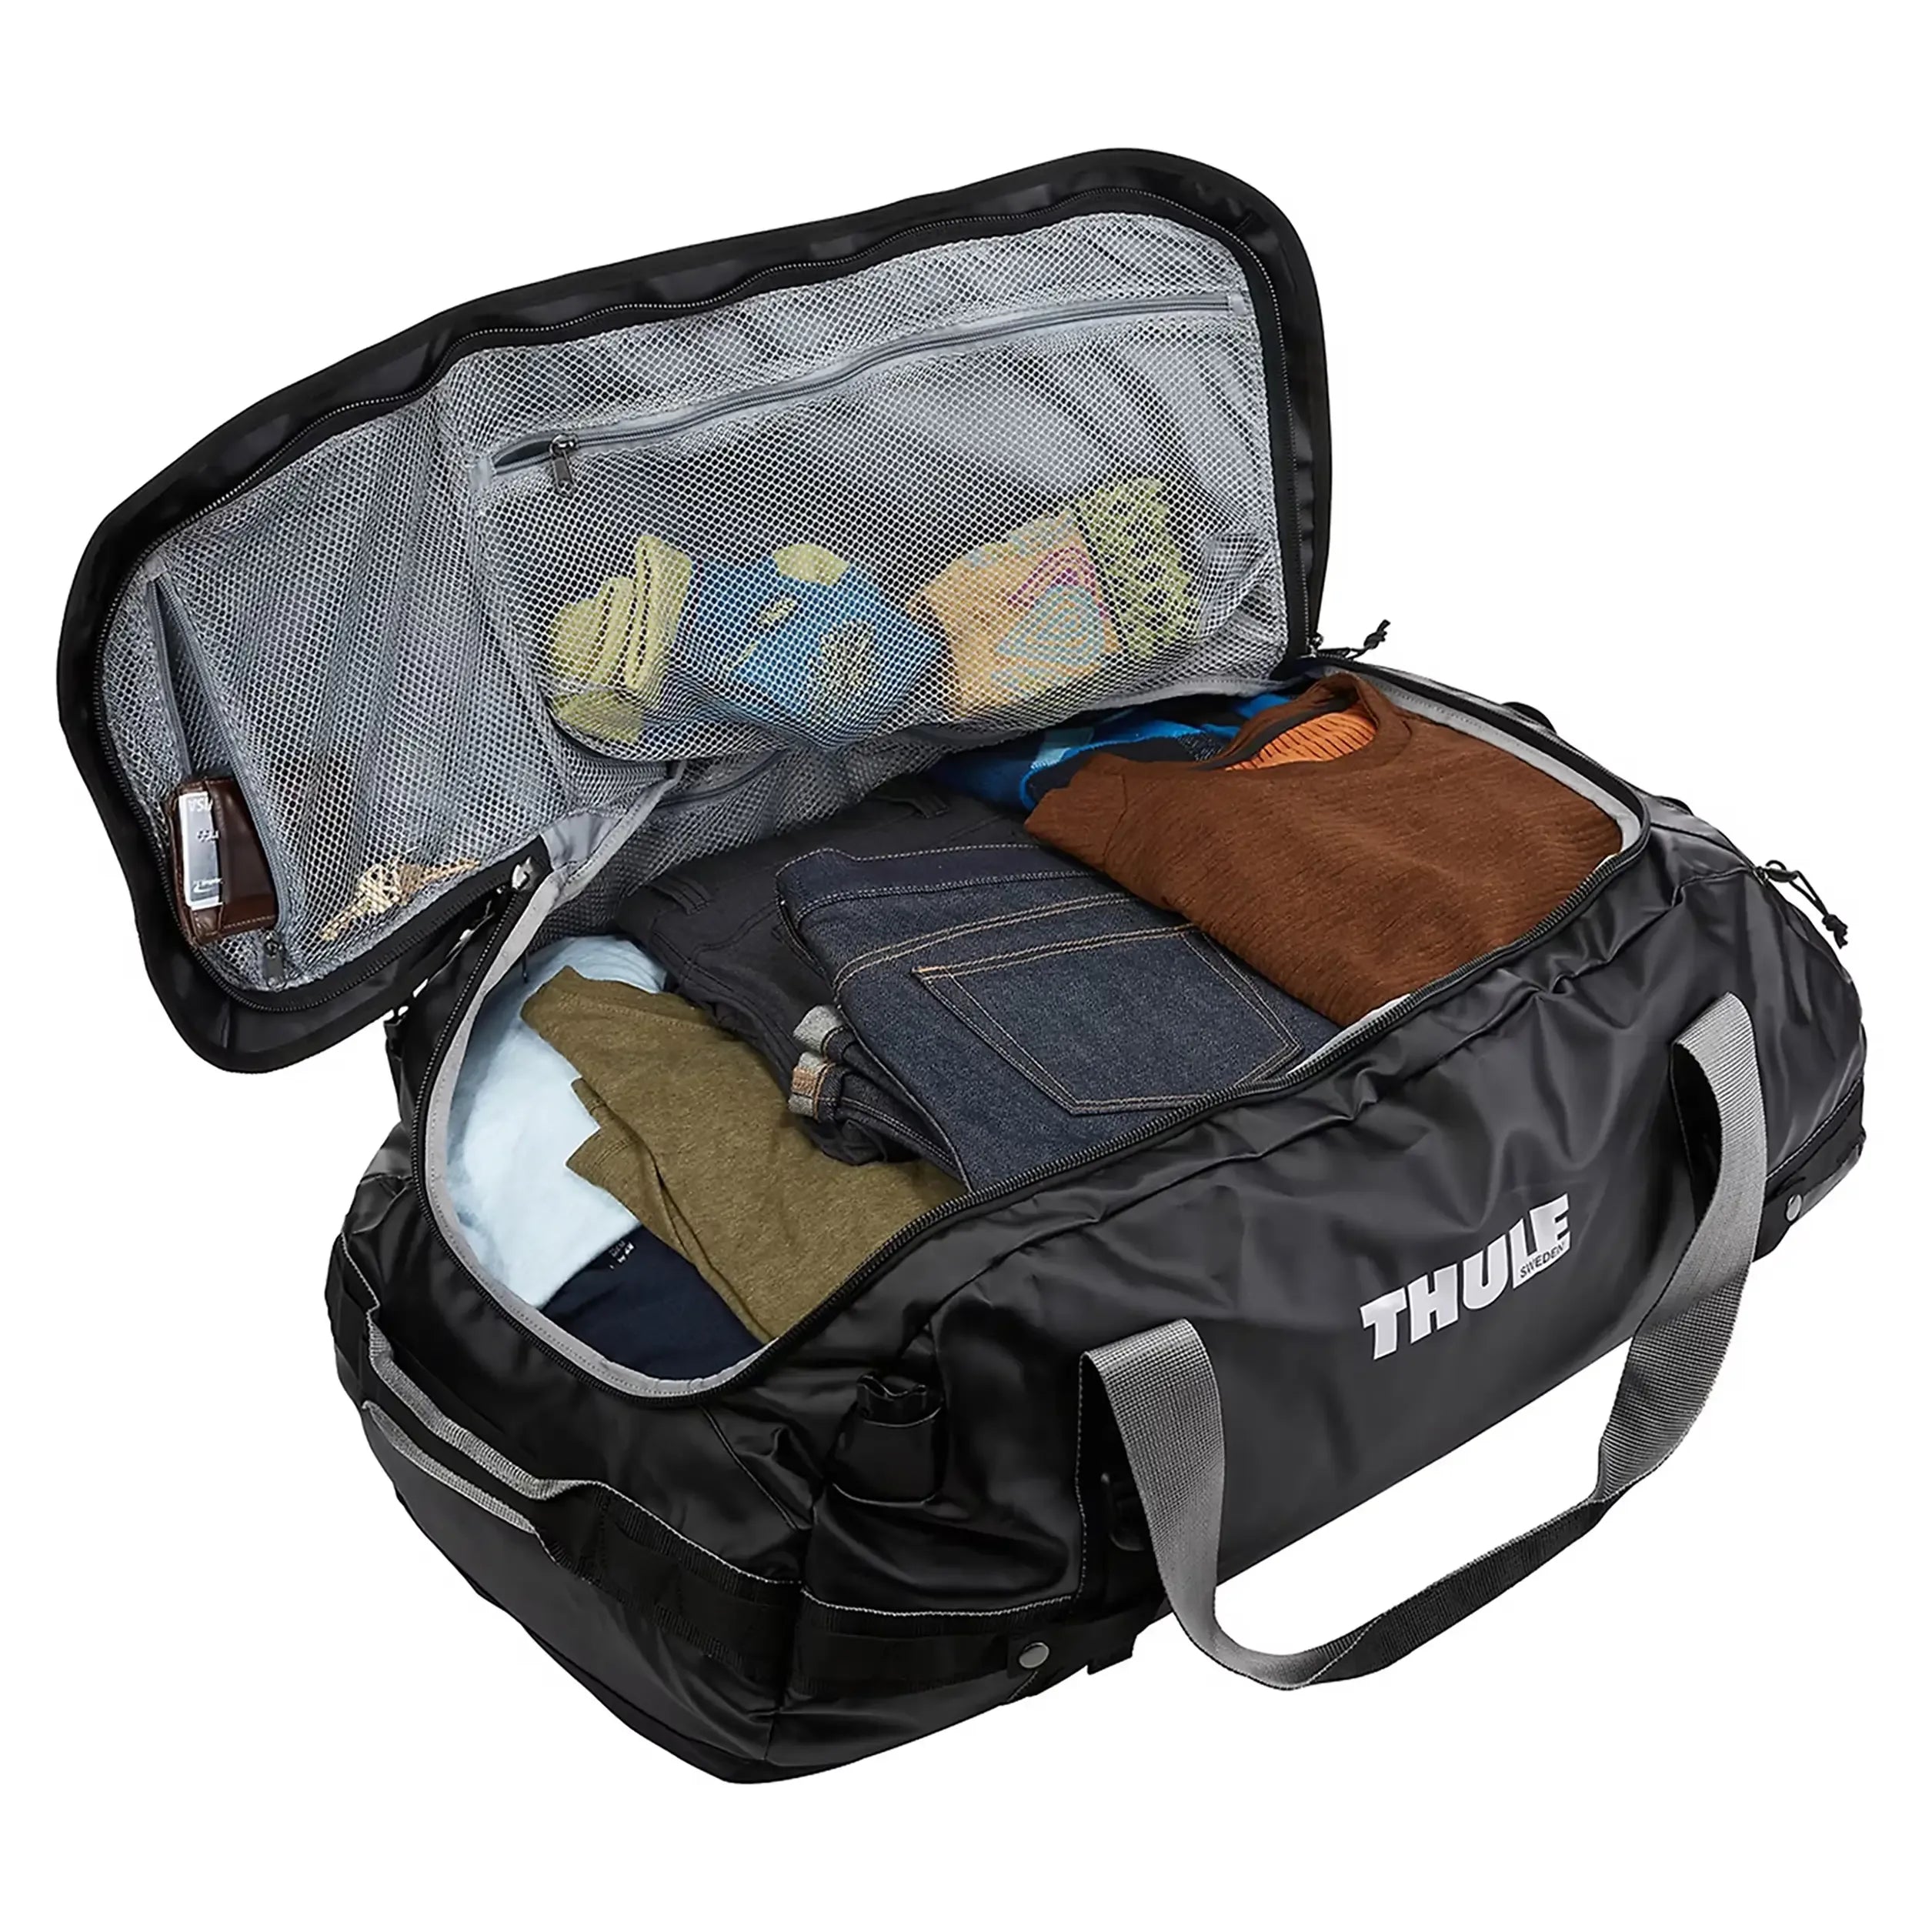 Thule Travel Chasm Travel Bag 74 cm - Olivine